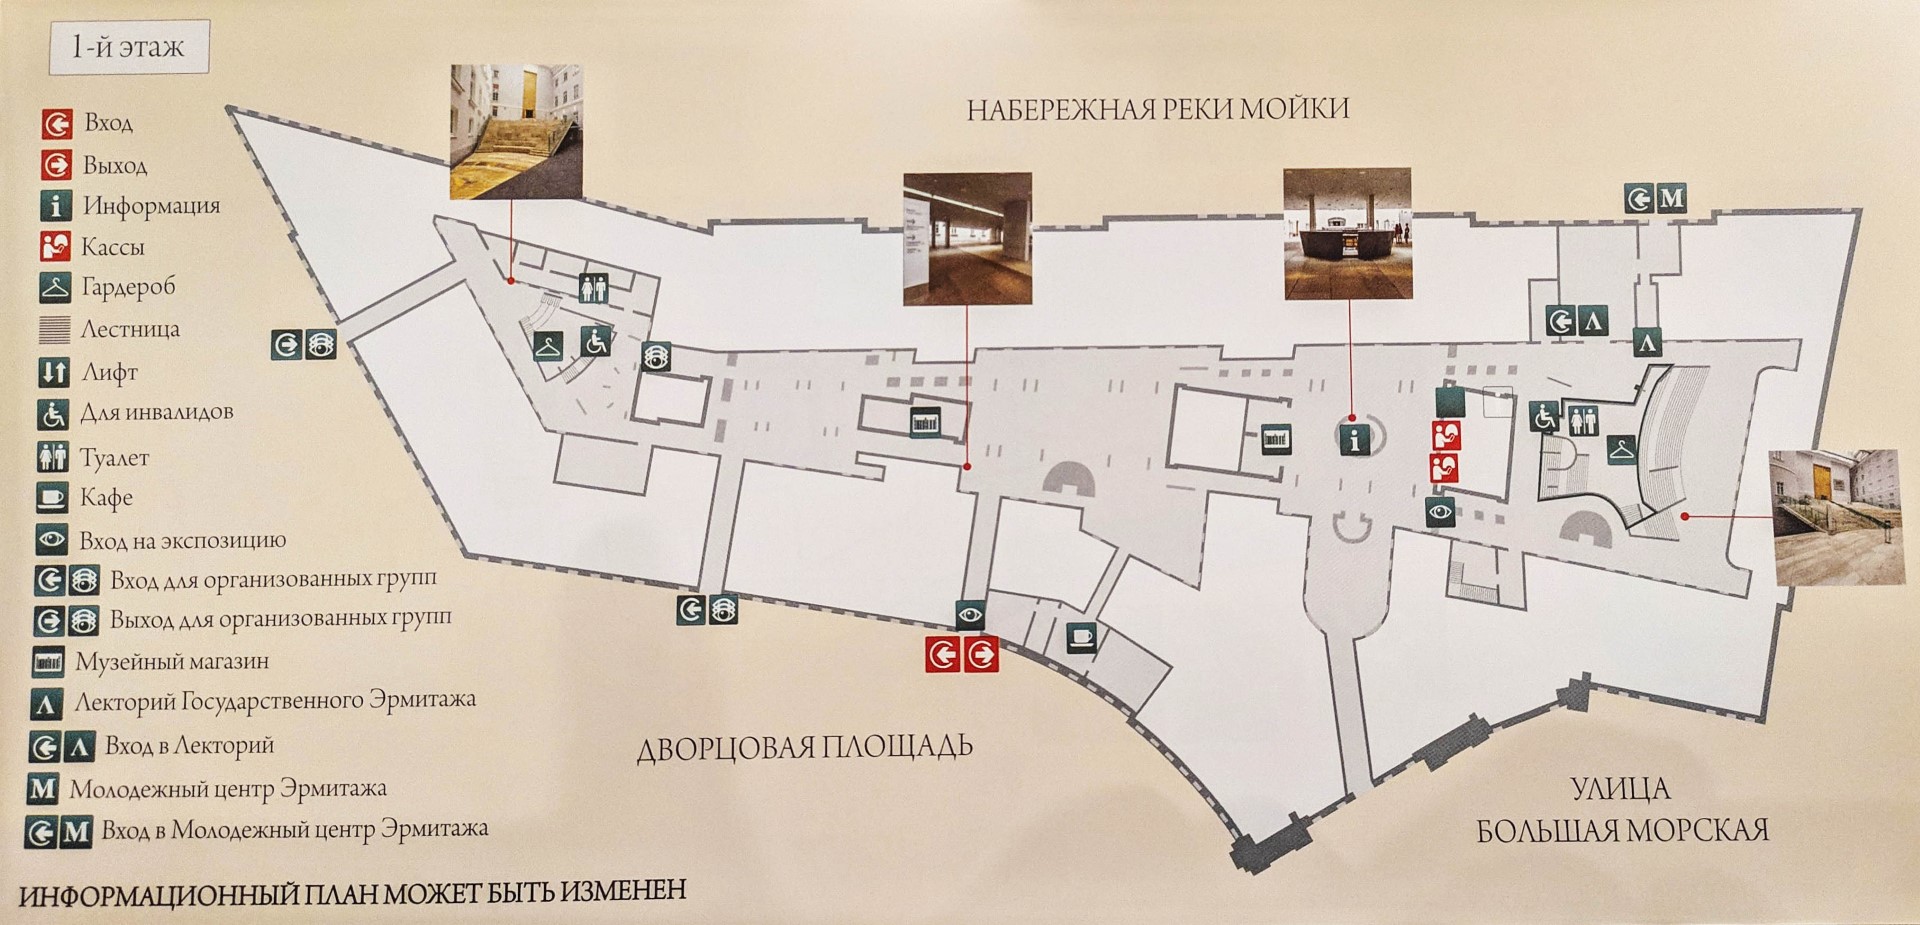 Главный штаб - план, карта 1 этаж